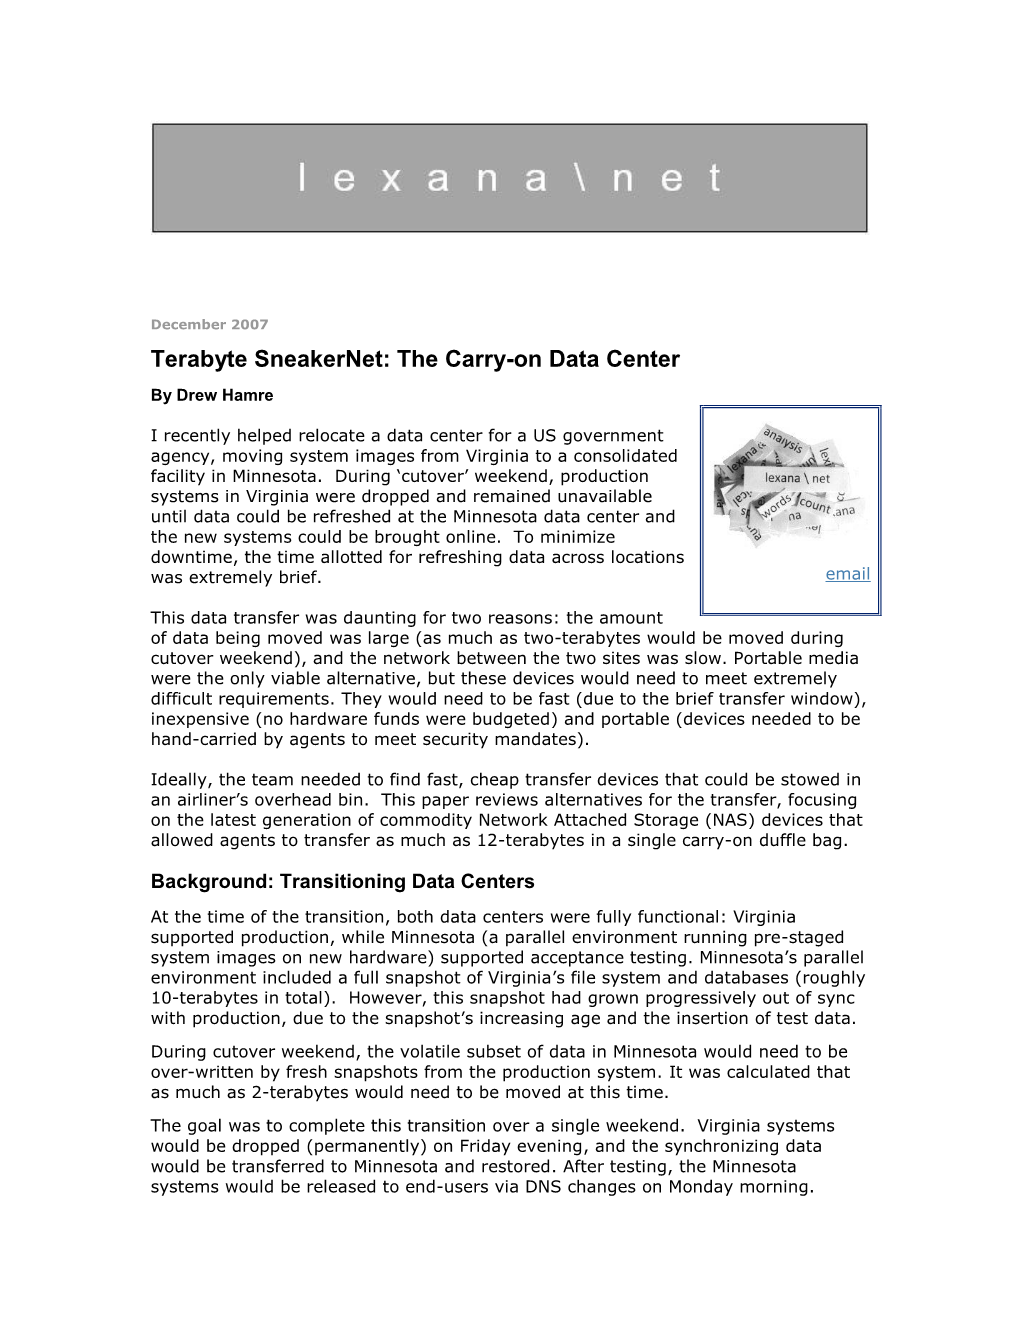 Terabyte Sneakernet: the Carry-On Data Center by Drew Hamre